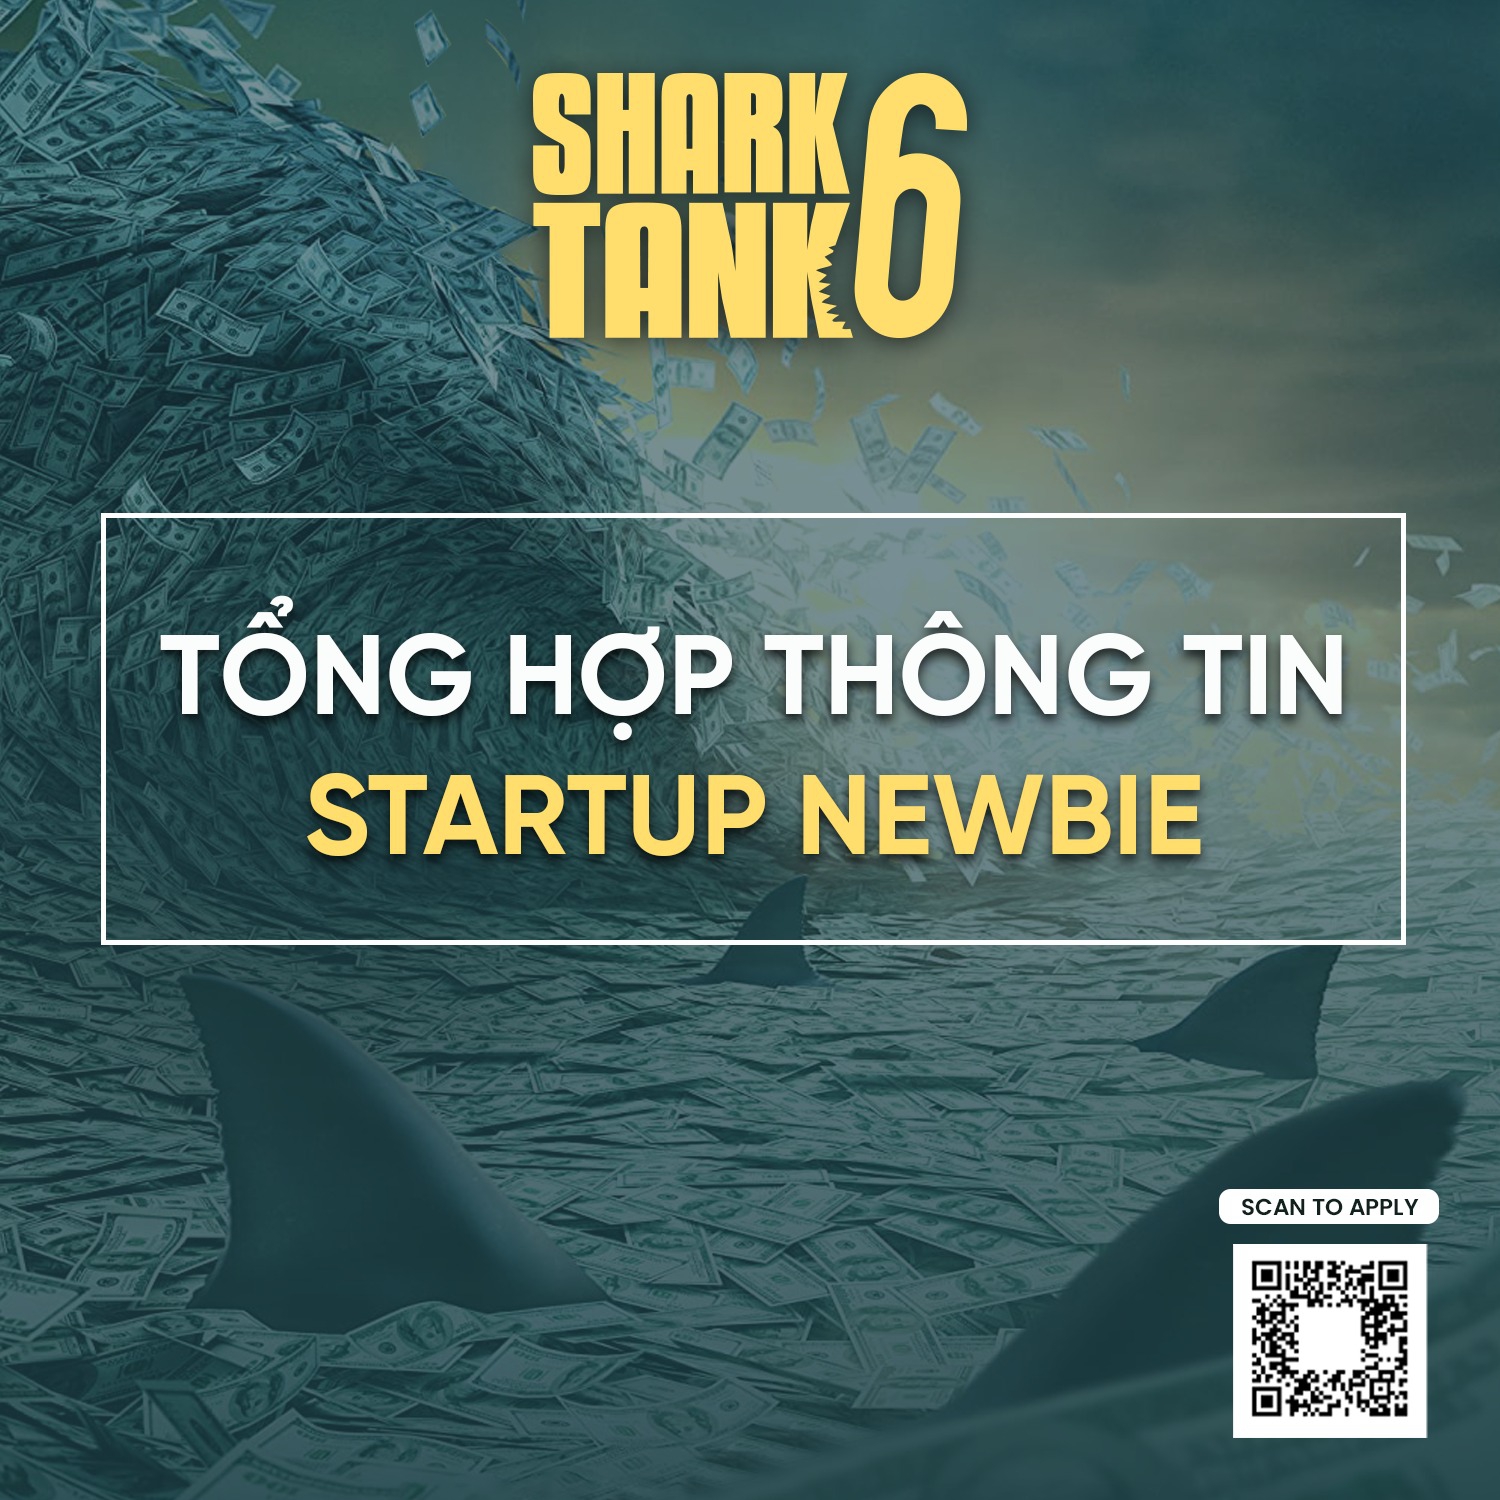 guideline-thong-tin-danh-cho-startup-newbie-con-dang-l-n-t-n-ch-a-biet-cach-tham-gia-shark-tank